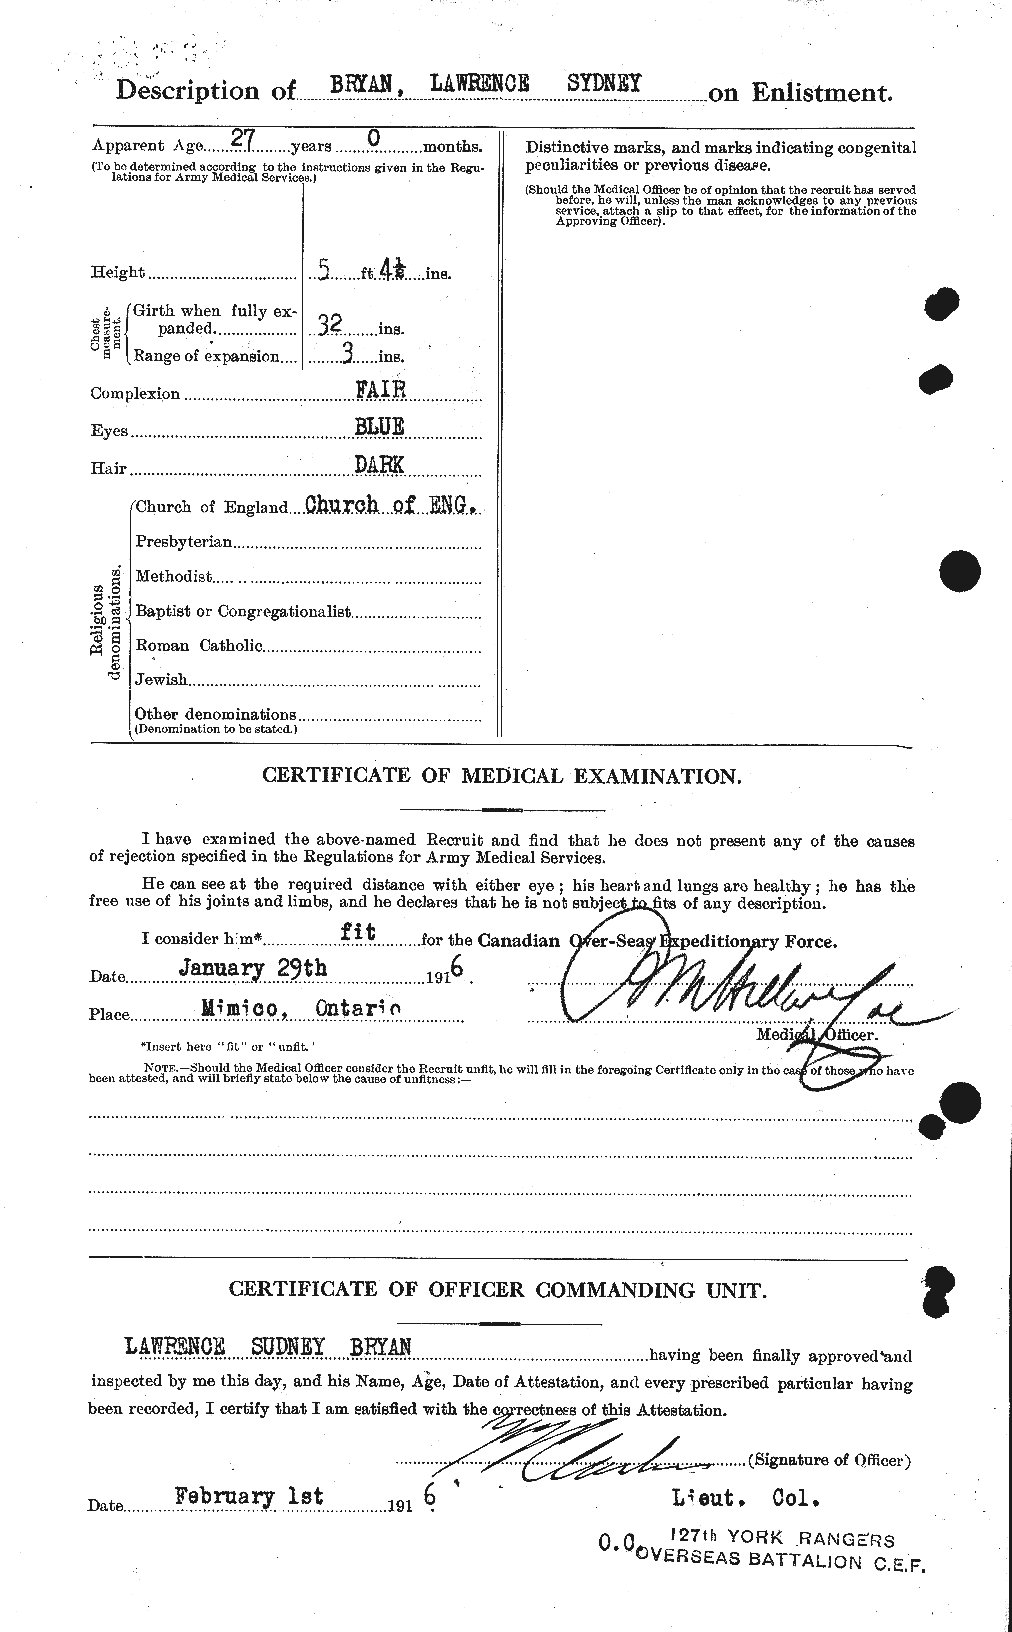 Dossiers du Personnel de la Première Guerre mondiale - CEC 270701b